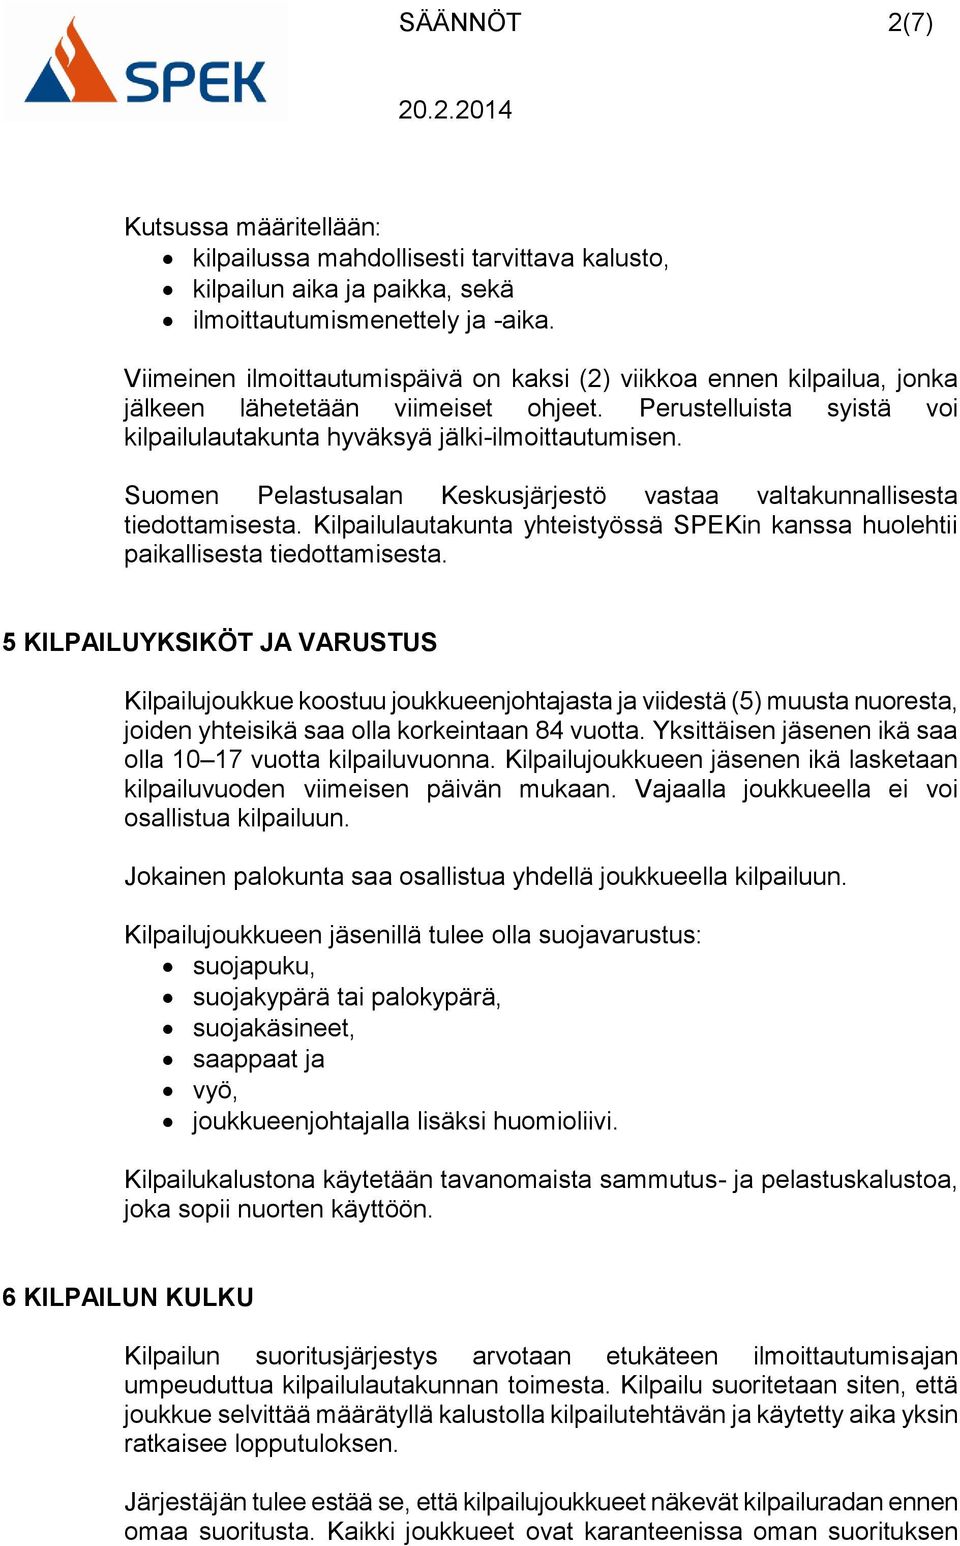 Suomen Pelastusalan Keskusjärjestö vastaa valtakunnallisesta tiedottamisesta. Kilpailulautakunta yhteistyössä SPEKin kanssa huolehtii paikallisesta tiedottamisesta.